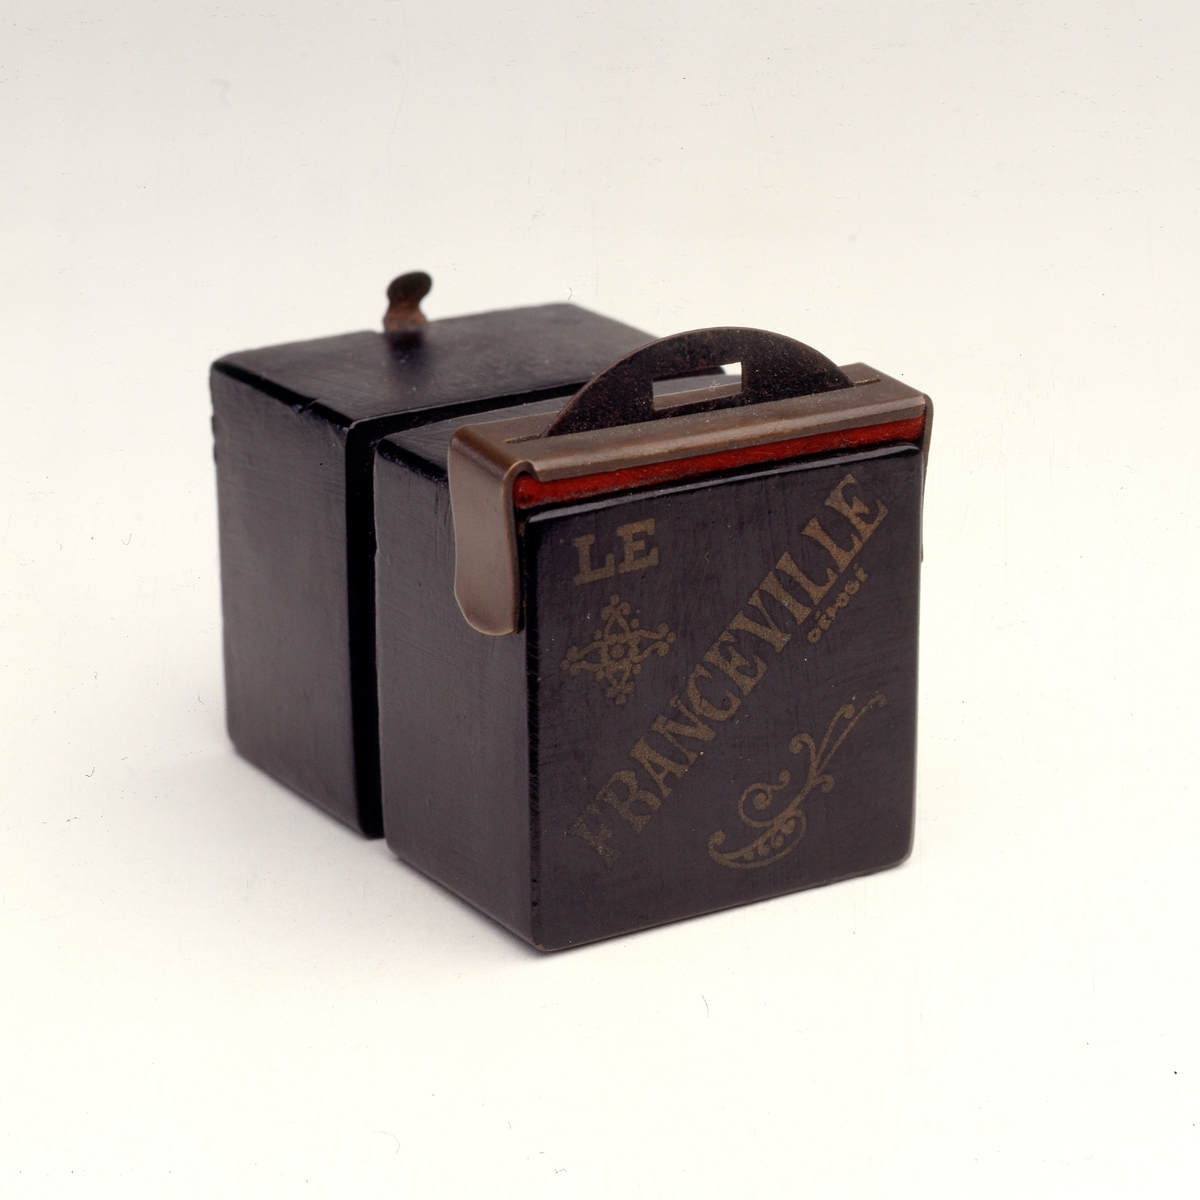 Le Franceville  er et lite bokskamera for 4 x 4 cm plater, produsert av L.F.G. & Co. i Paris ca. 1908.